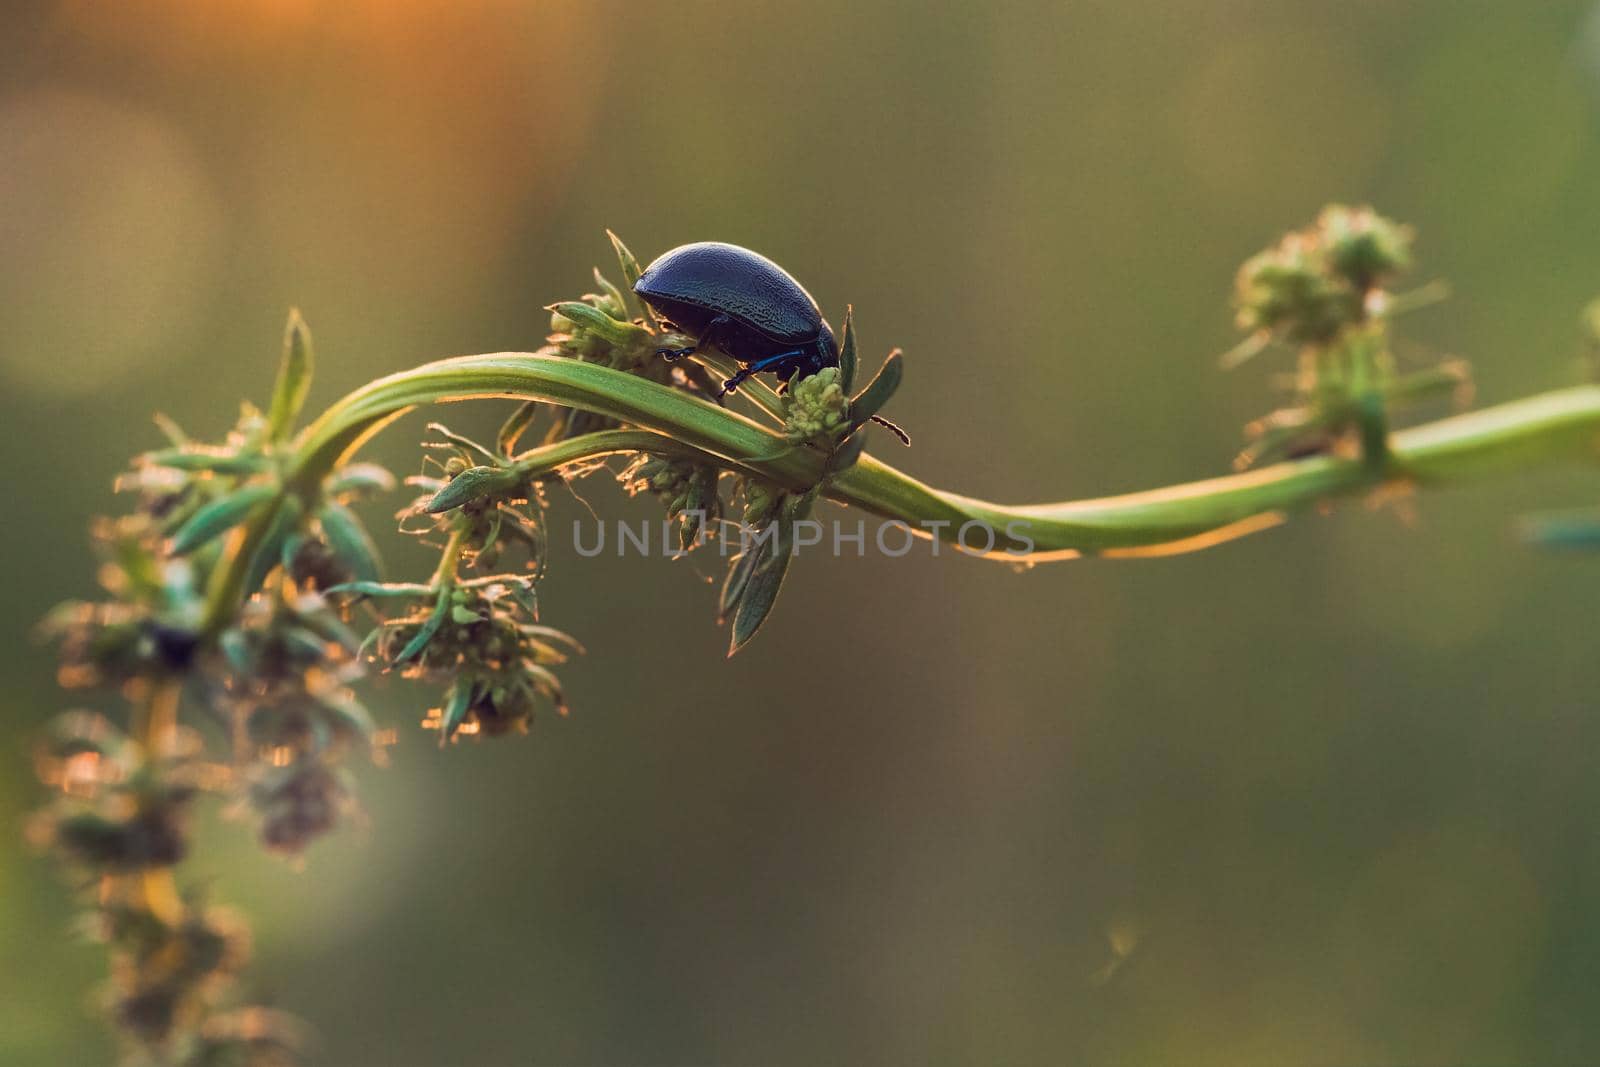 Black Dor beetle, Anoplotrupes stercorosus, on green stem in Summer